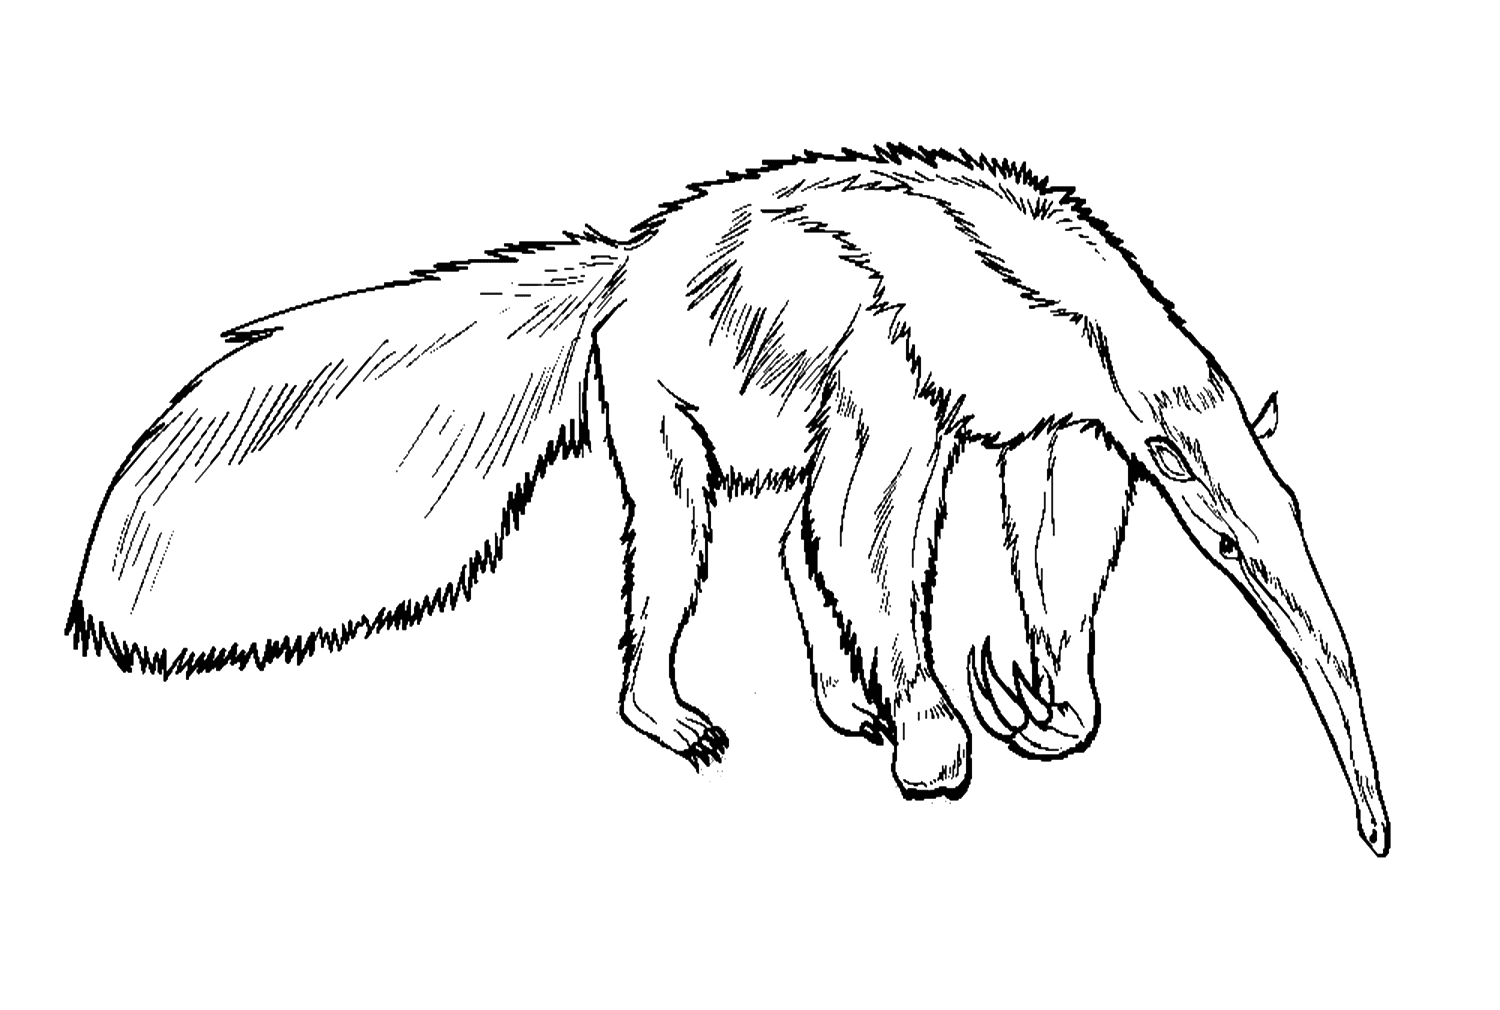 Formichiere gigante realistico di Anteater